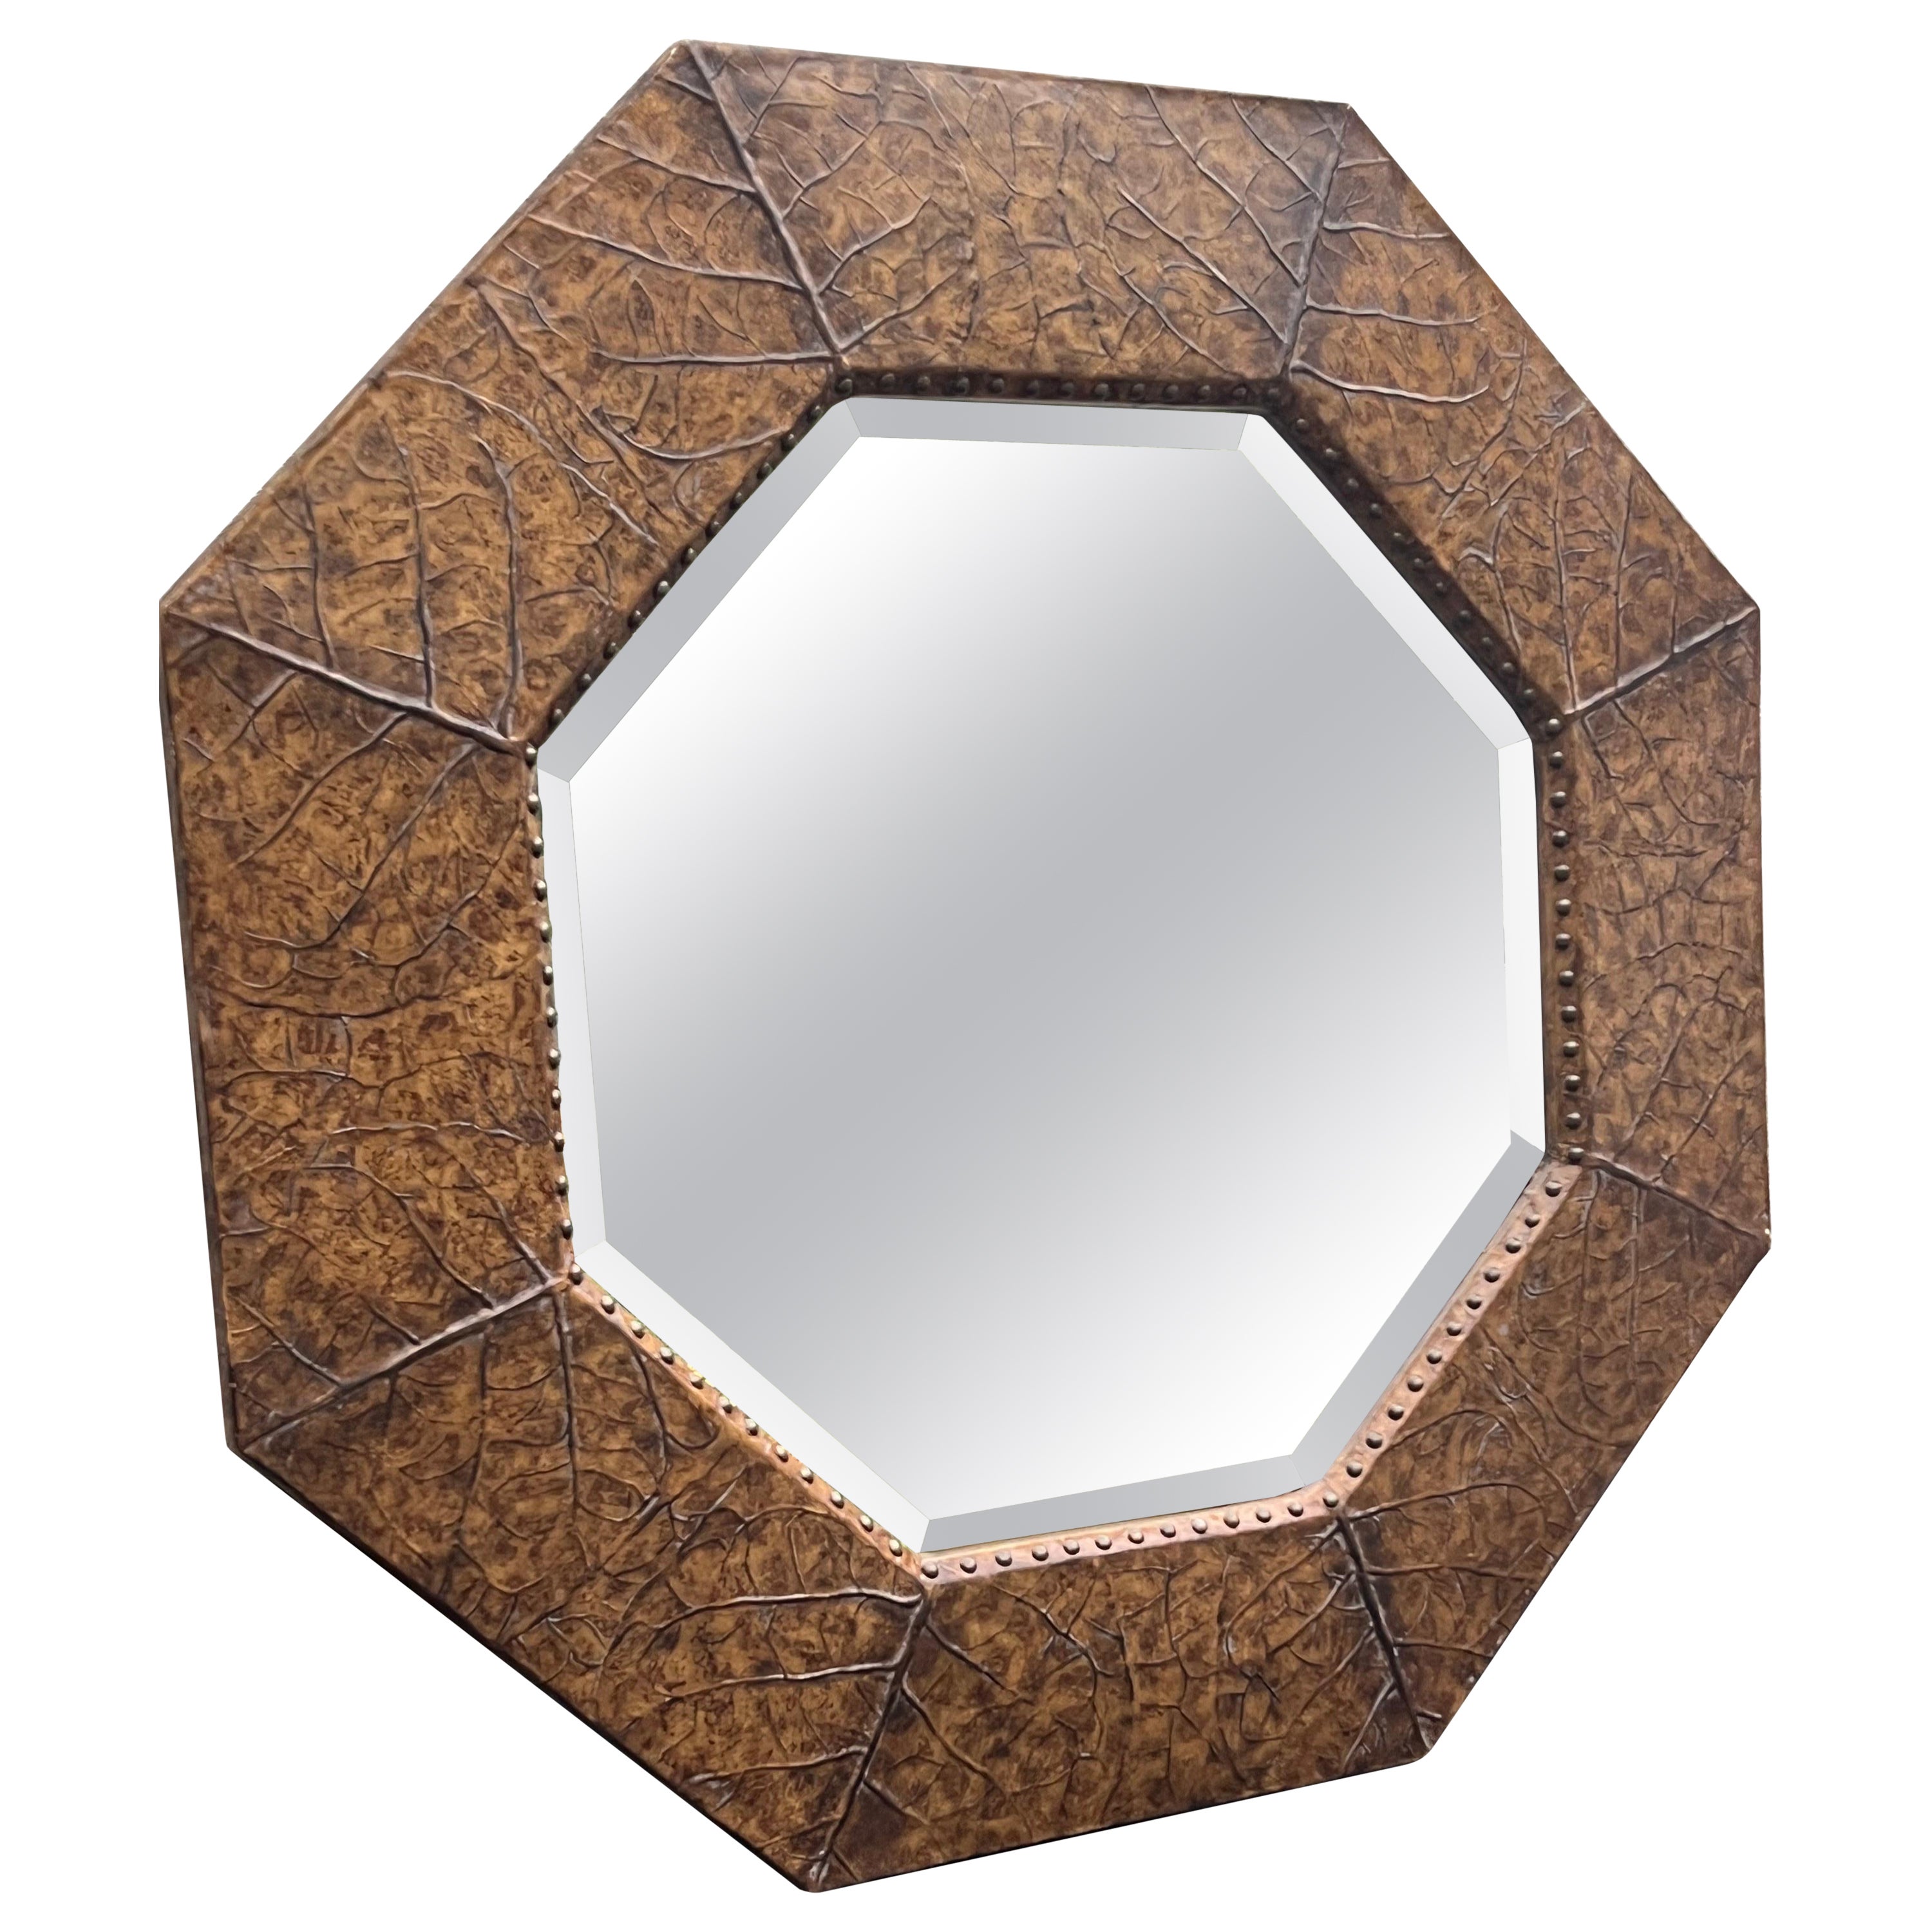 Large Octagonal Leaf Design Mirror For Sale